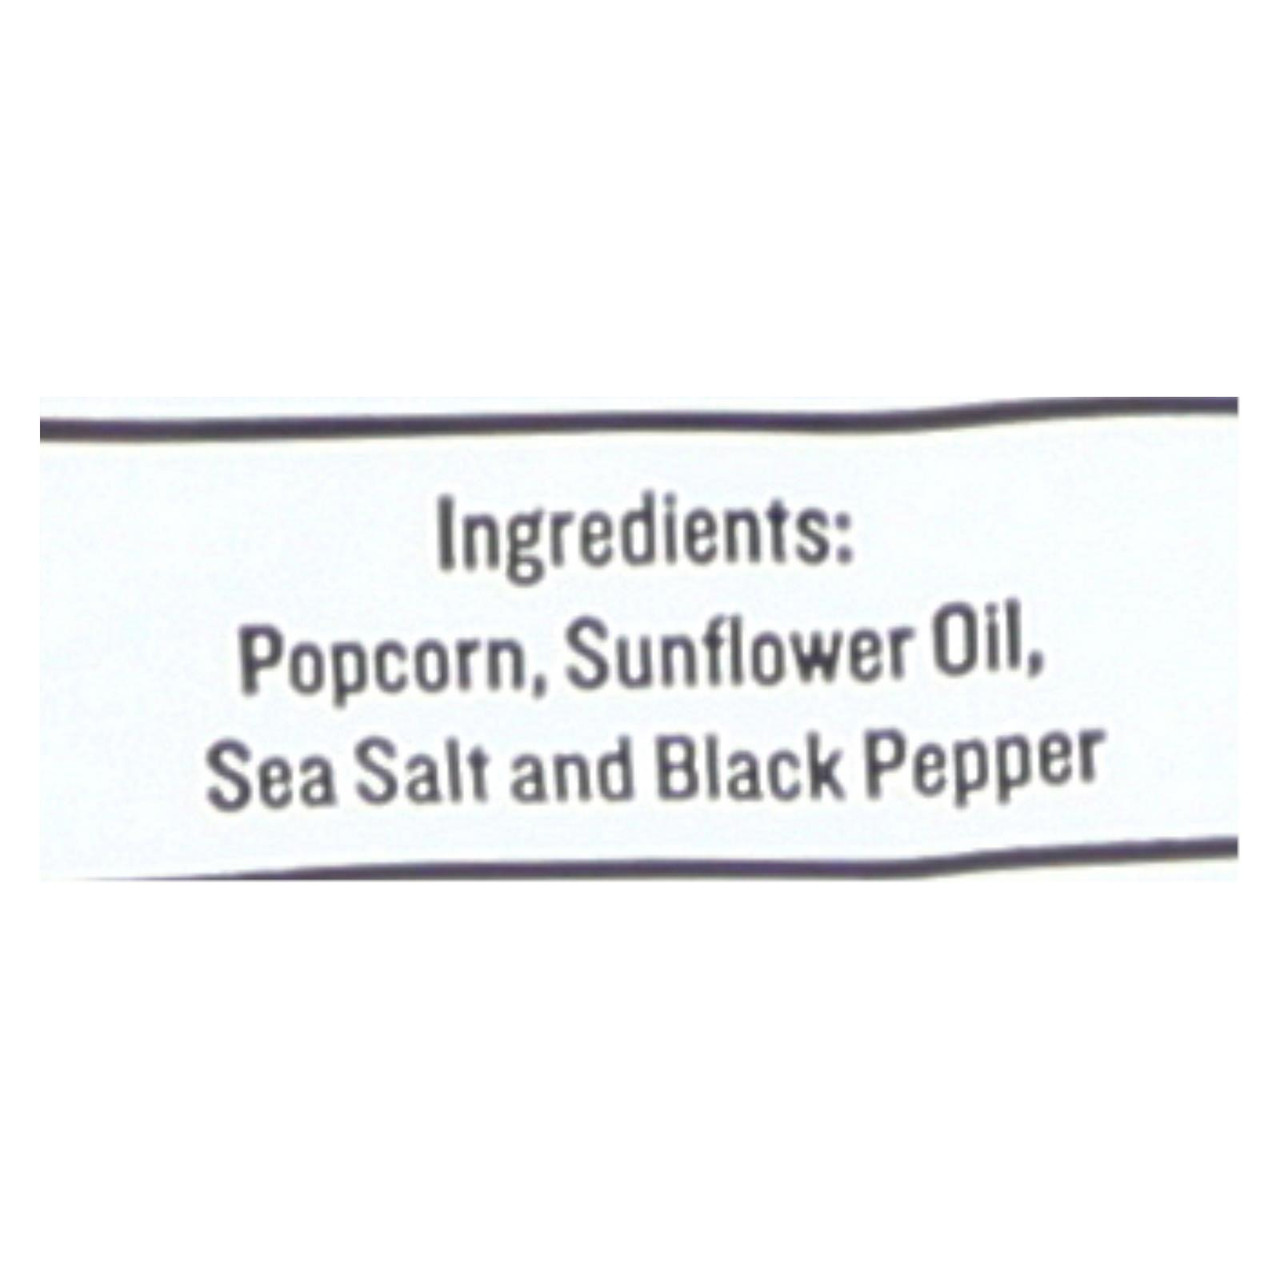 Skinny Pop Sea Salt Popcorn, 2.8 oz, 6 count